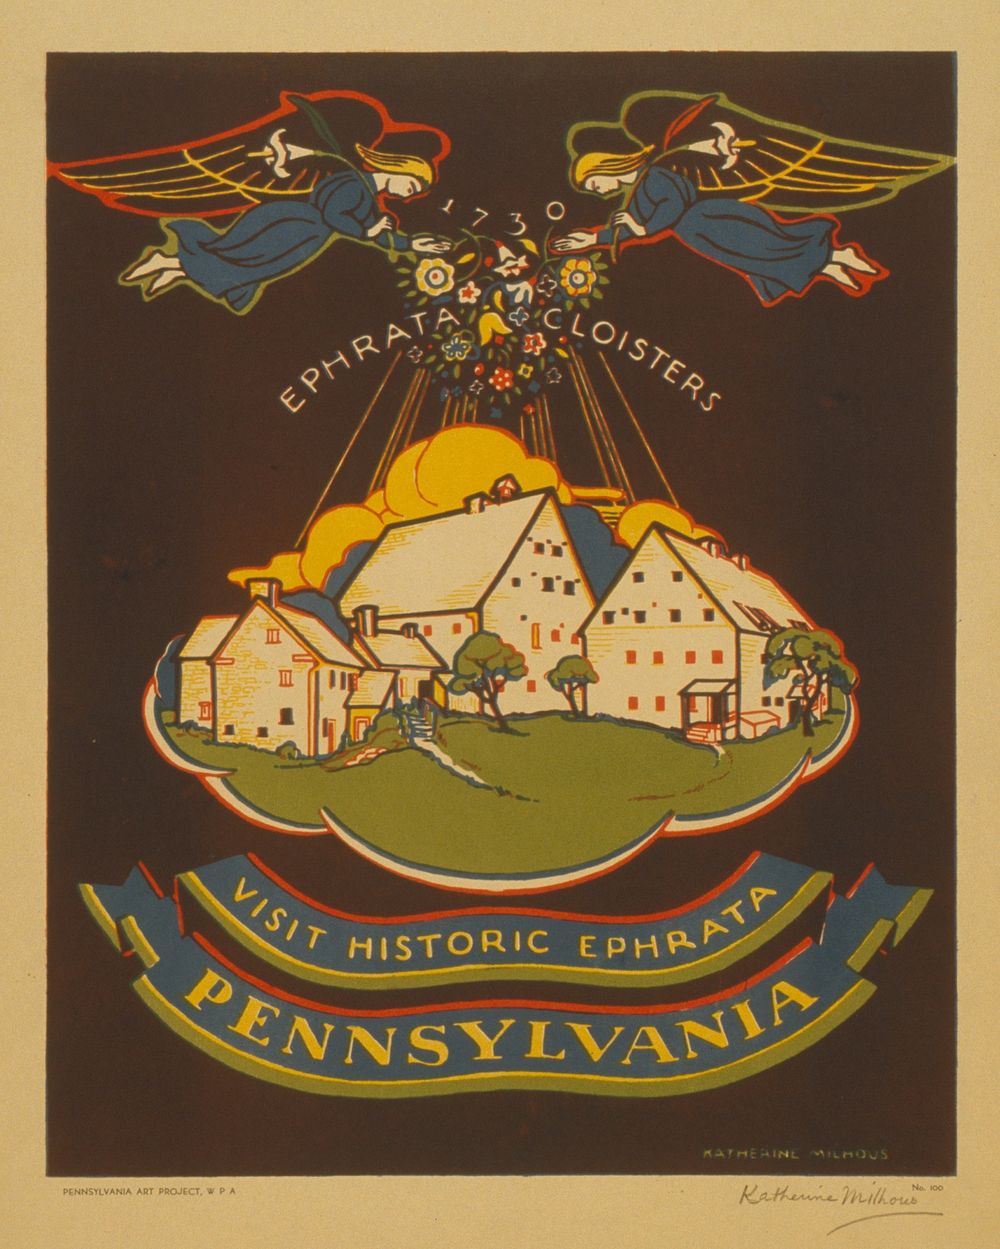 Visit historic Ephrata, Pennsylvania  Katherine Milhous.